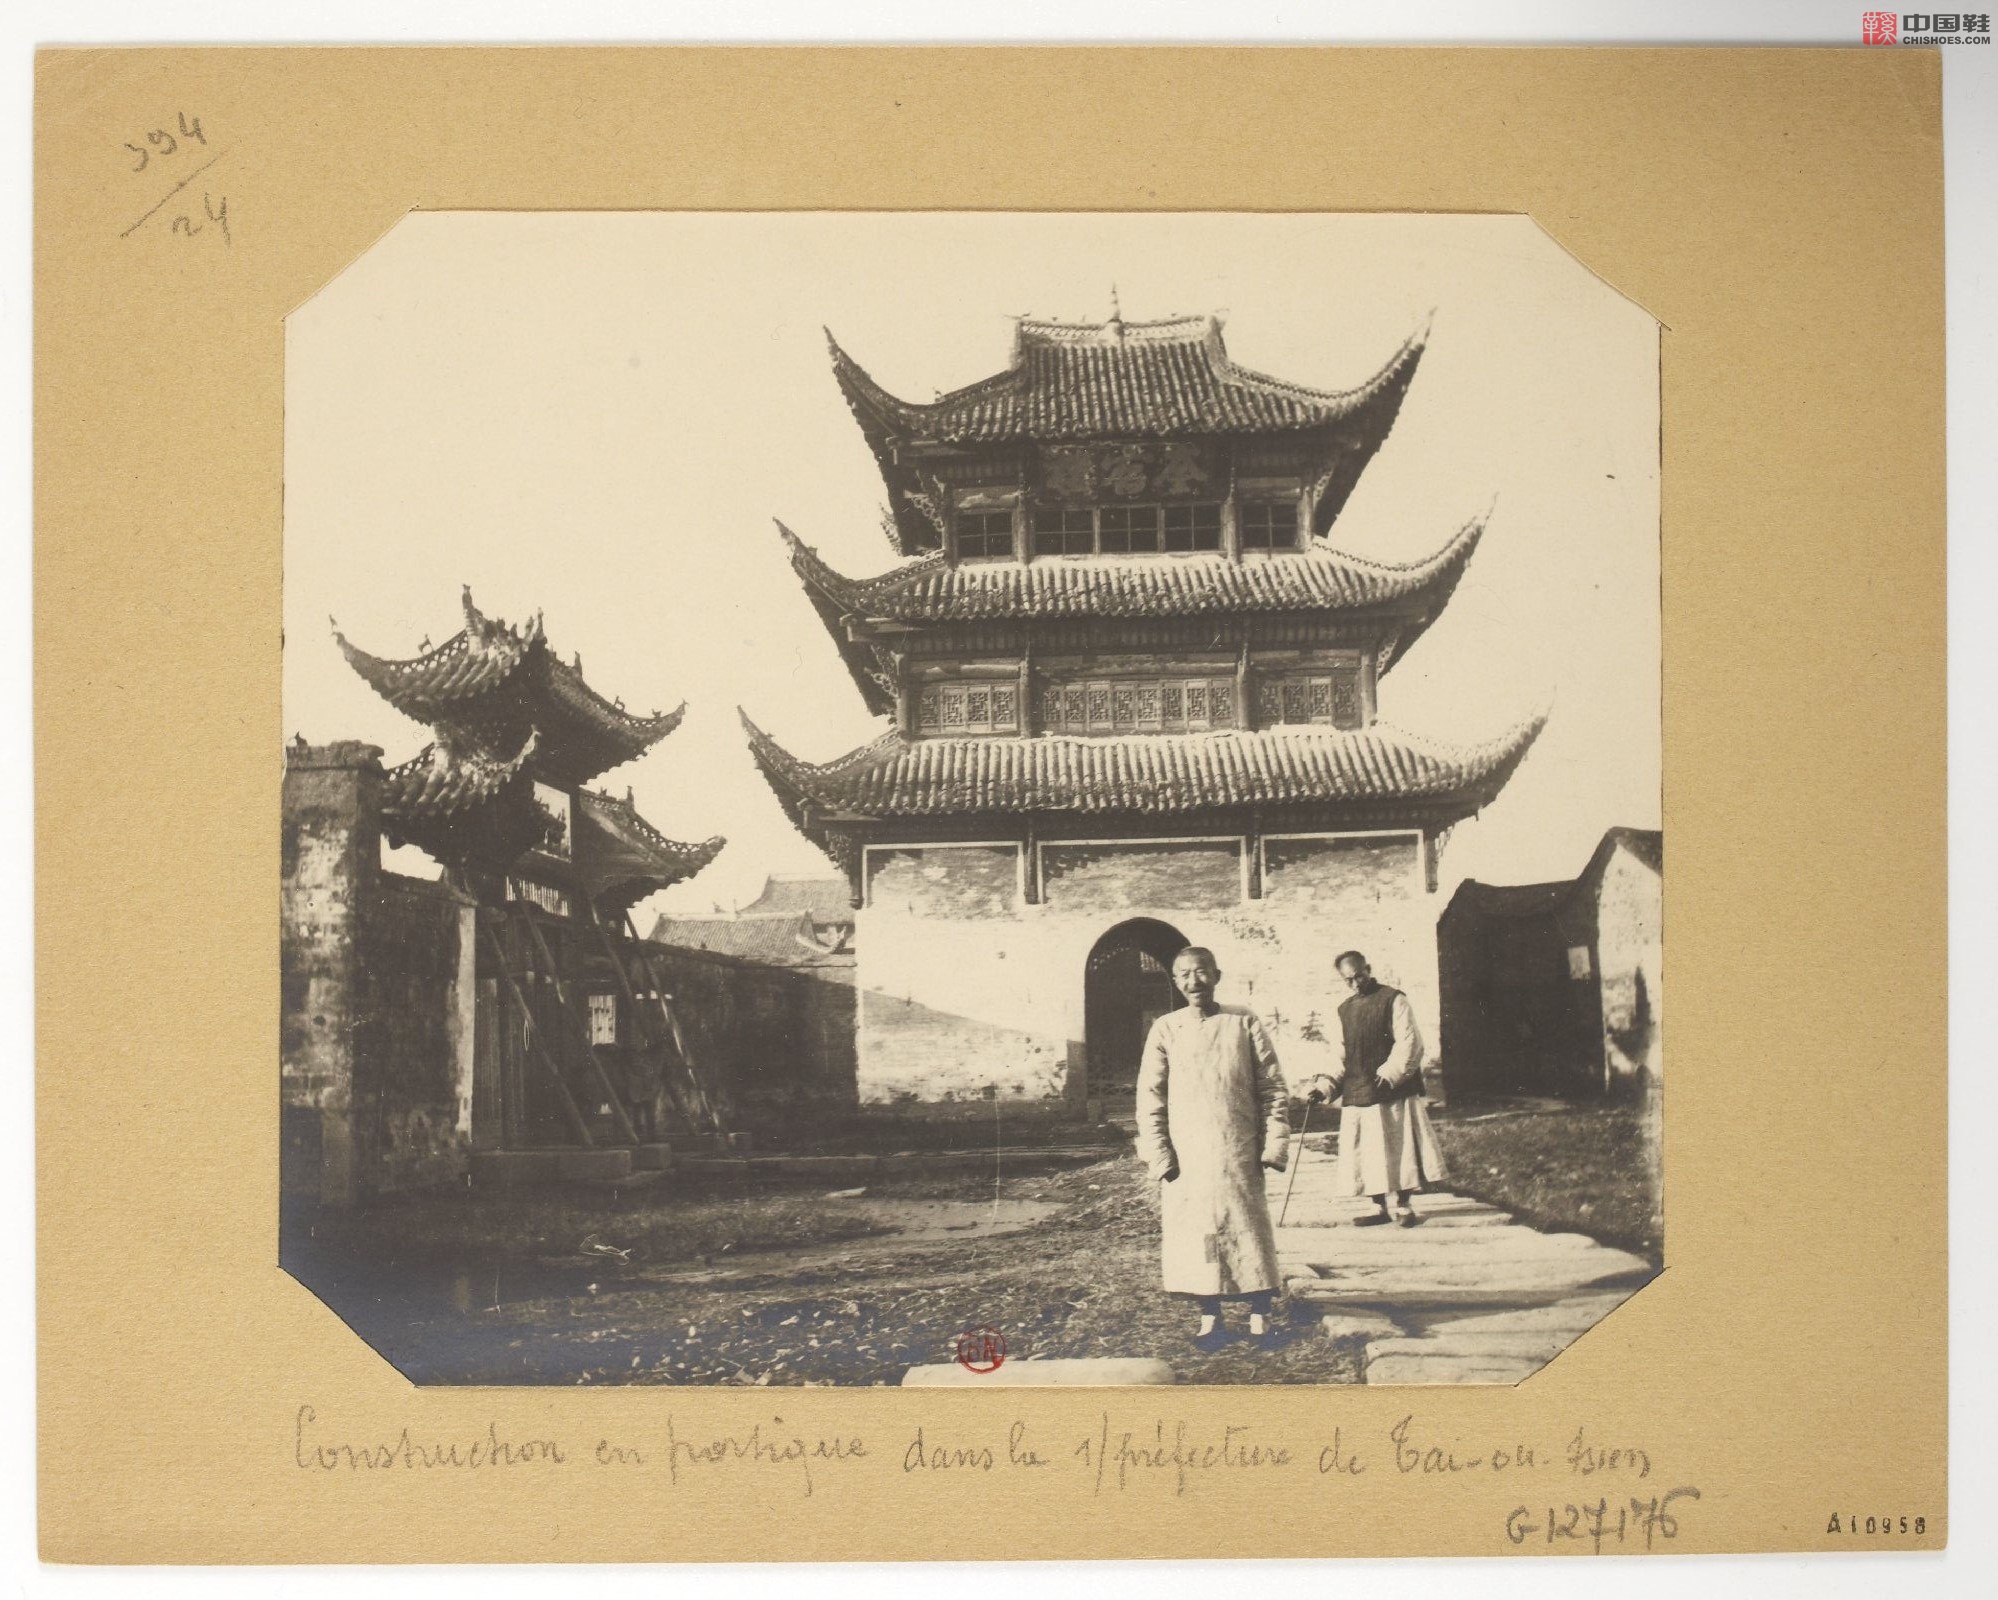 拉里贝的中国影像记录.415幅.By Firmin Laribe.1900-1910年_Page_185.jpg